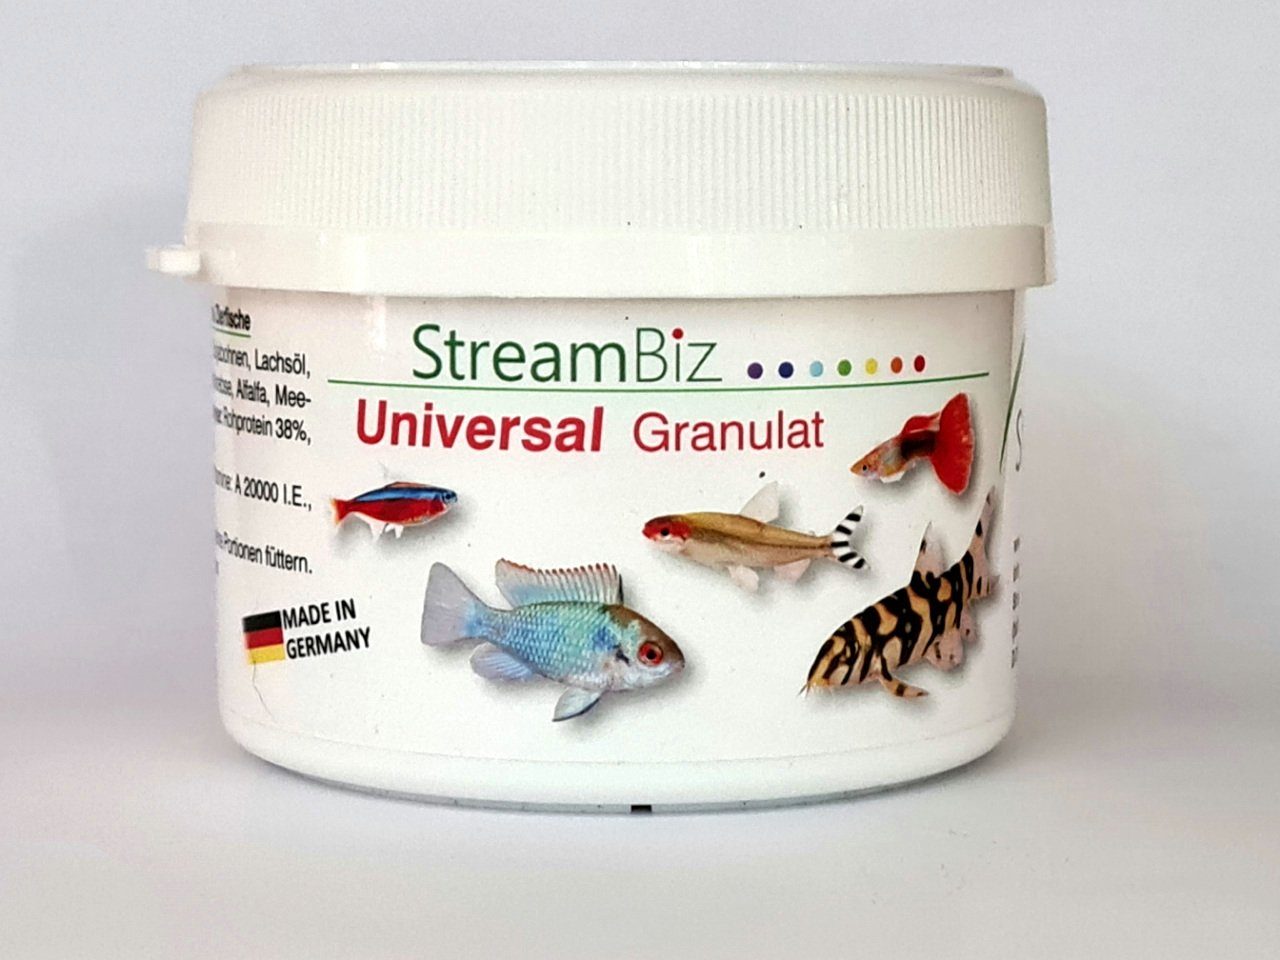 Aquaristik-Langer Aquariendeko StreamBiz Universal Granulat - Alleinfutter für Zierfische 80 g